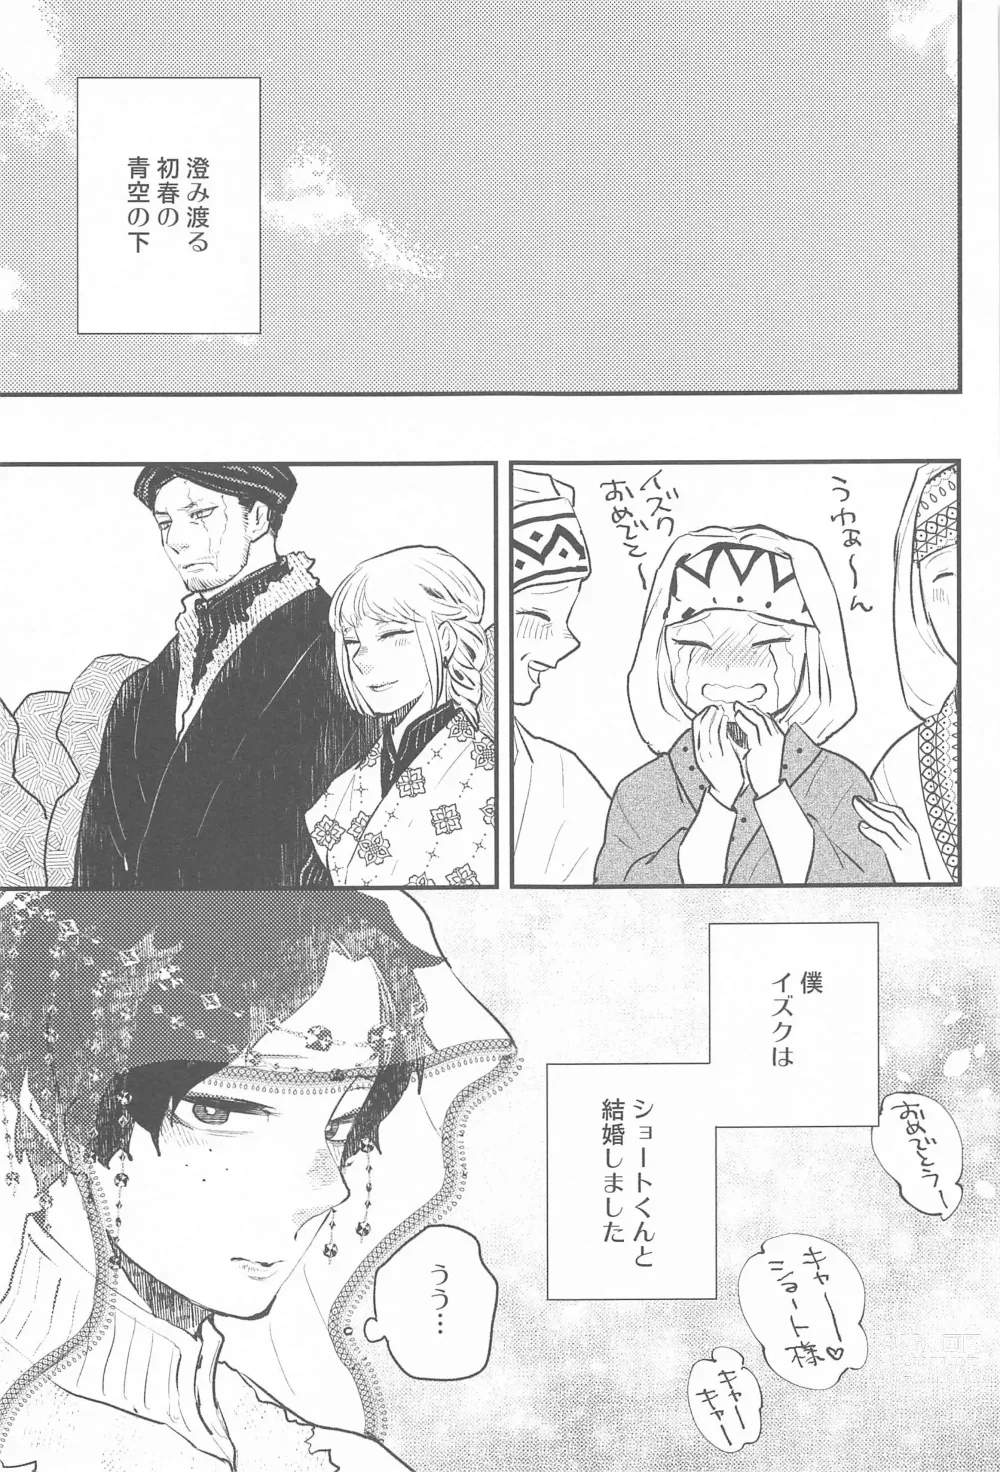 Page 2 of doujinshi Tsuki to Taiyou Shinkon Hen